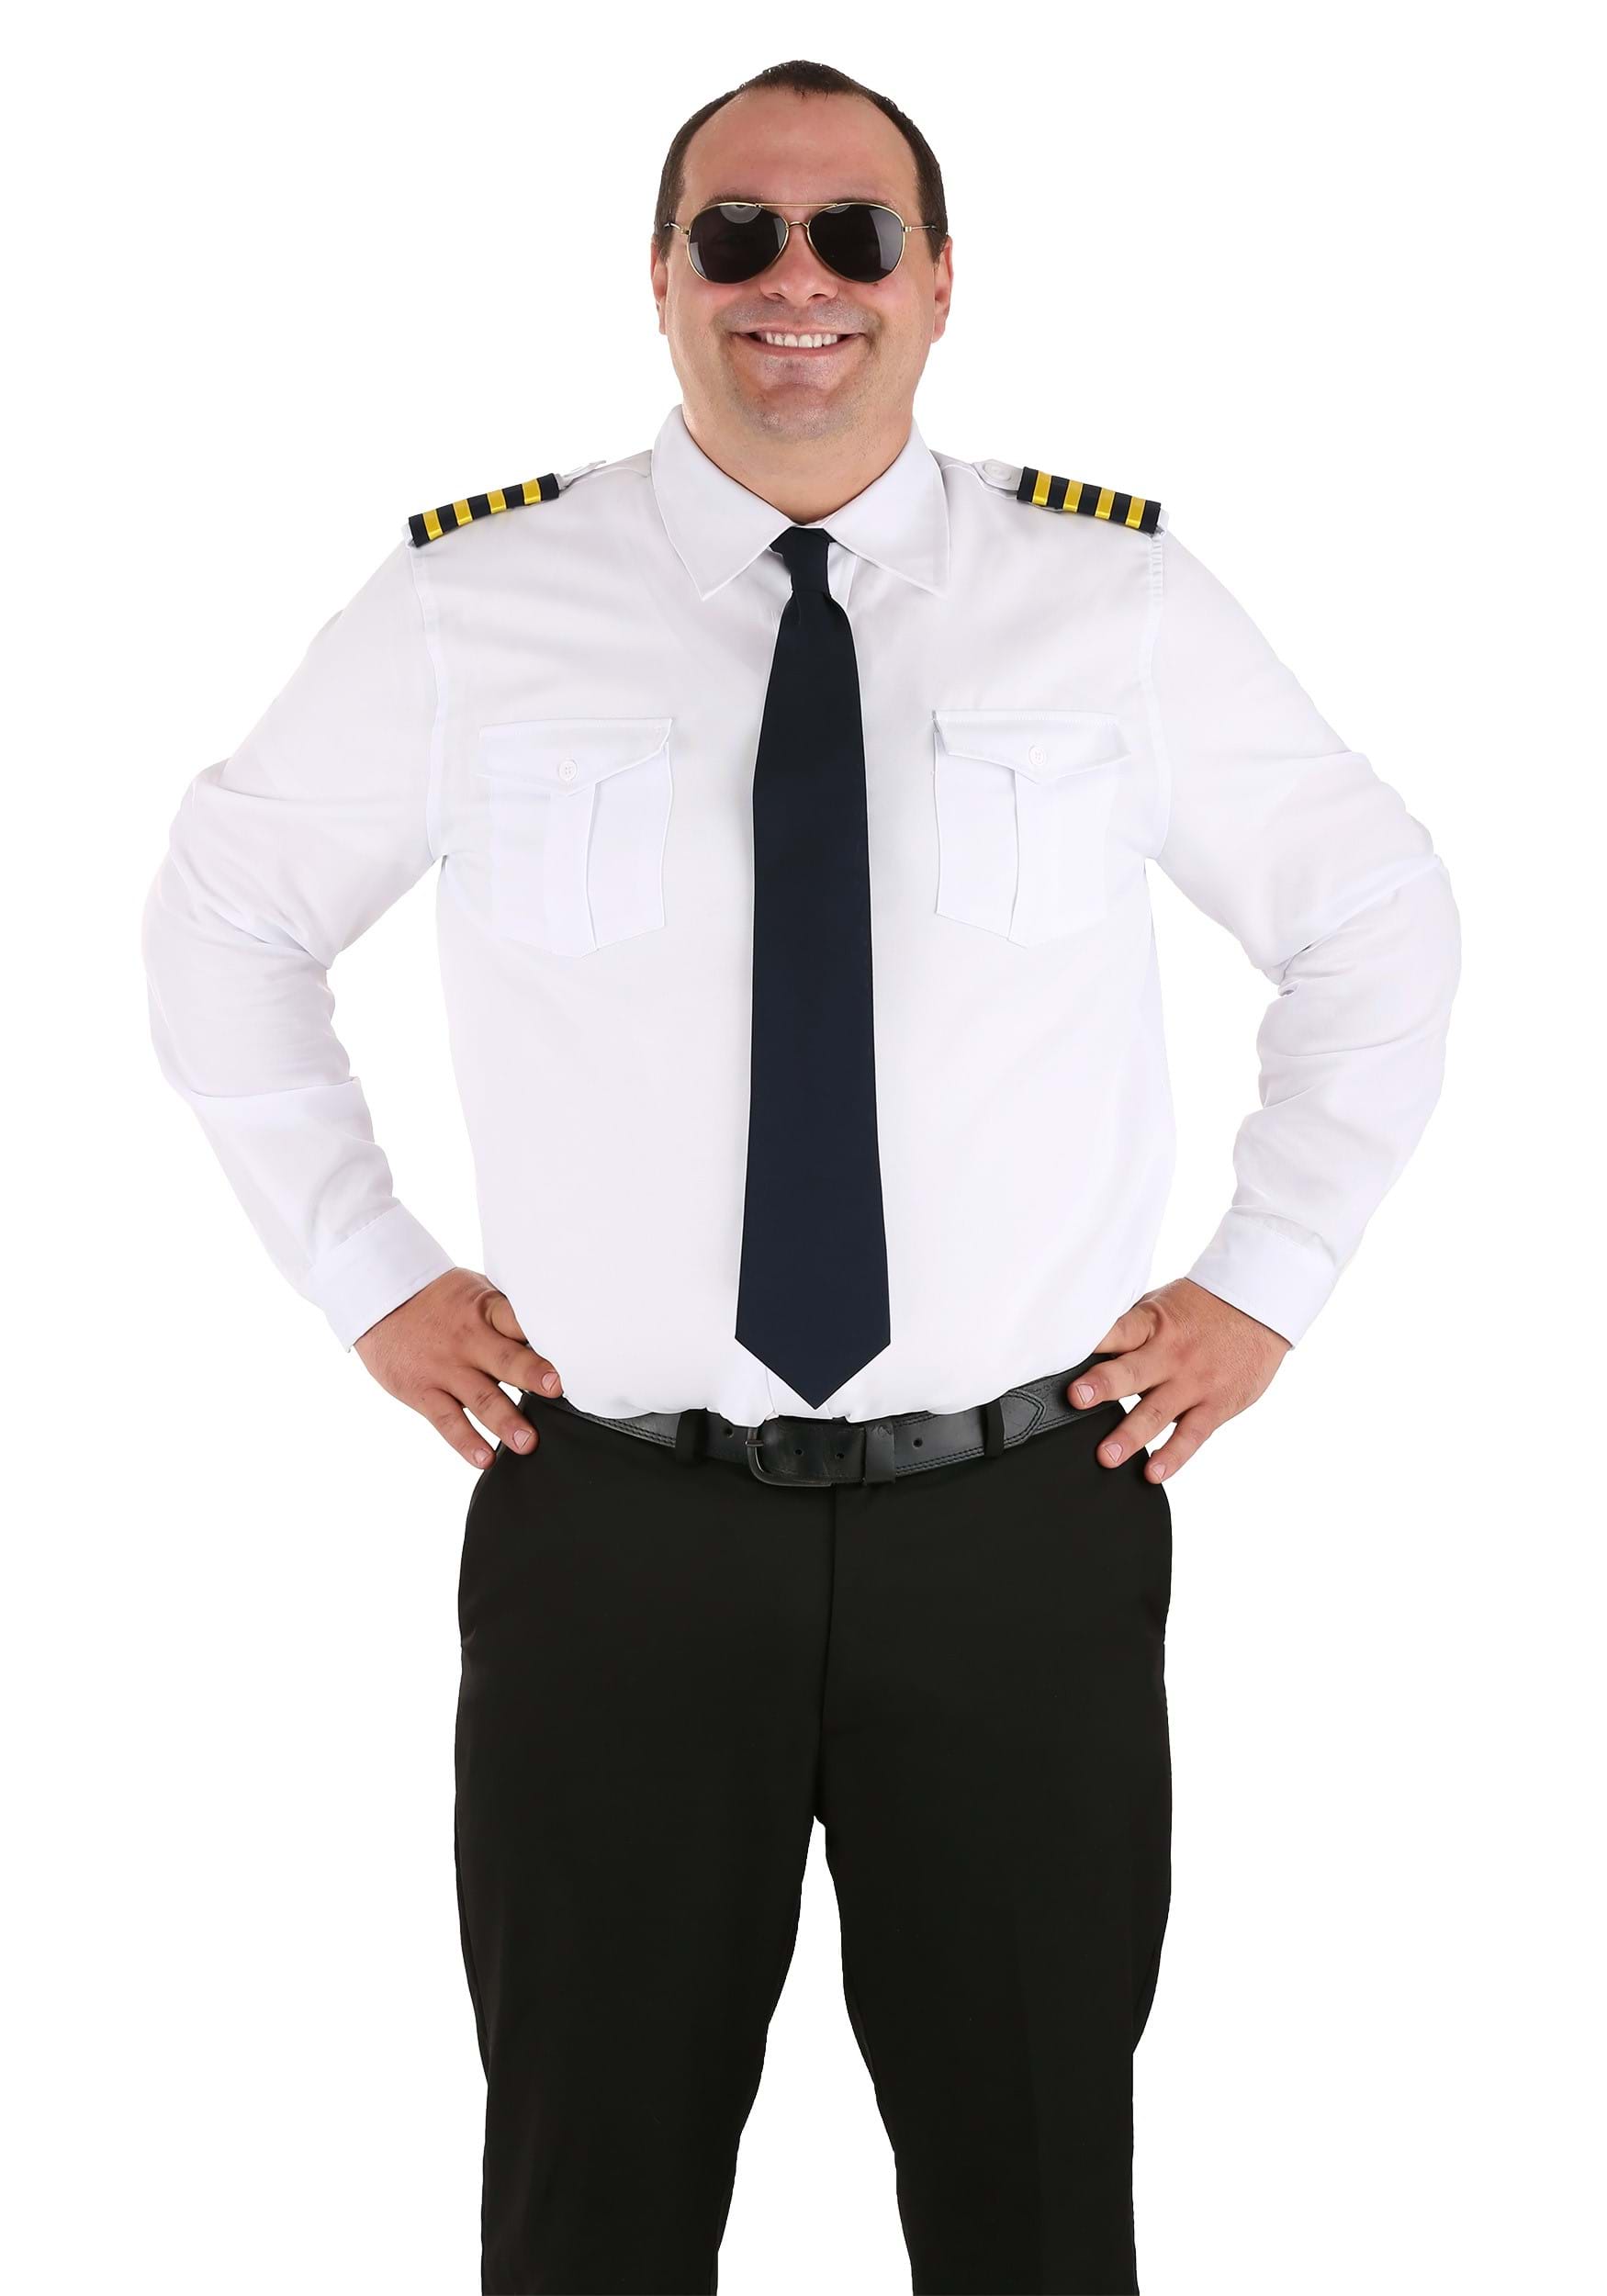 Plus Sizes Pilot Uniform Fancy Dress Costume Shirt